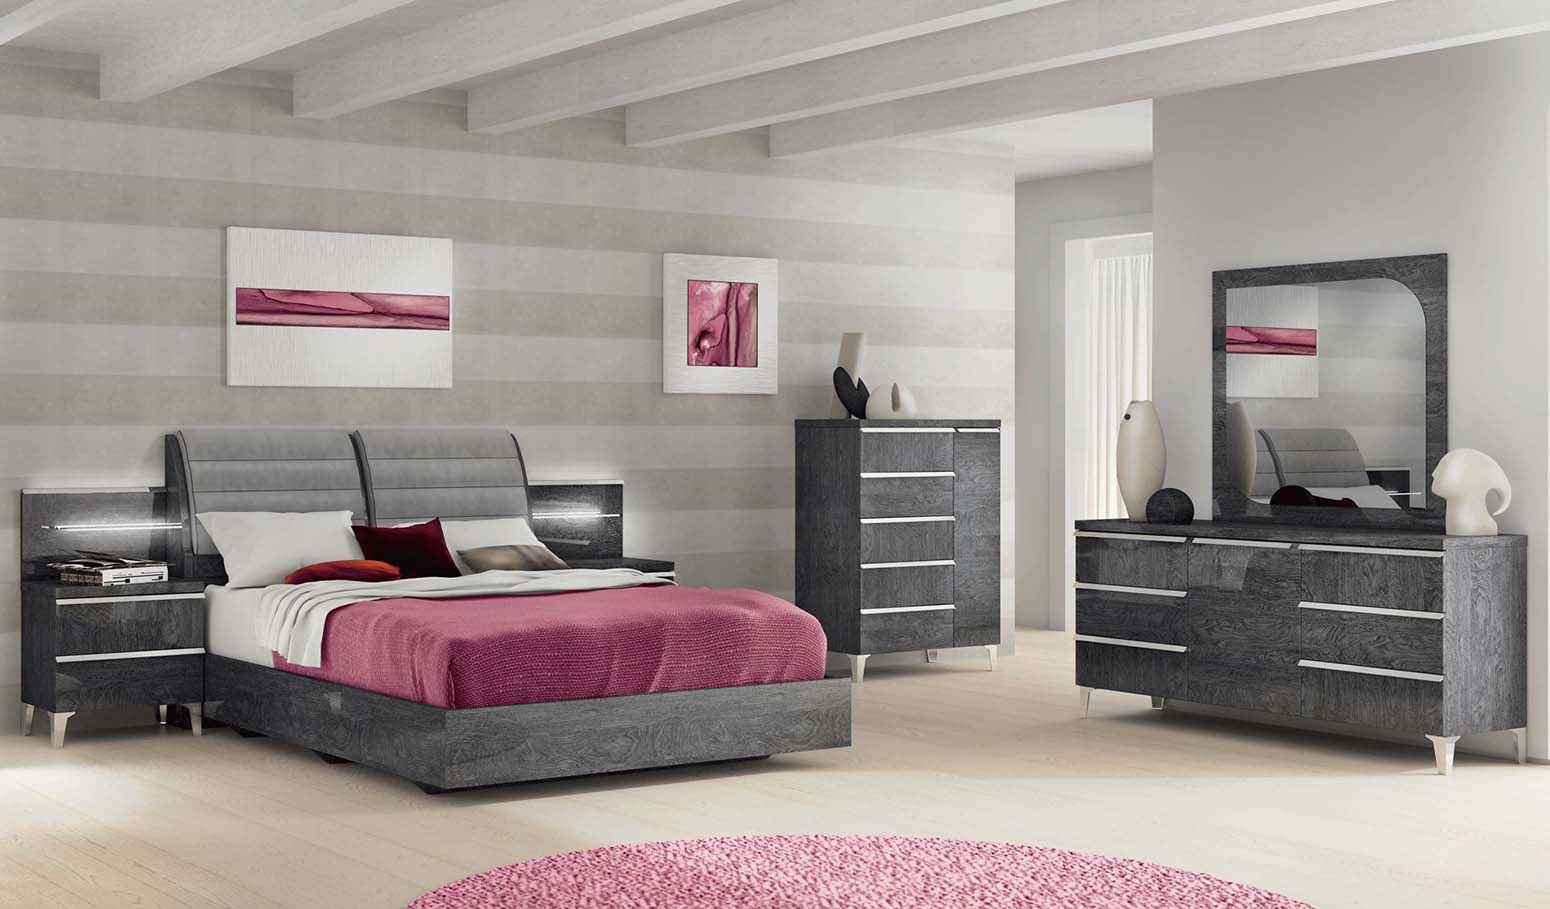 Top 10 Brands to Buy Bedroom Furniture Online & Instore